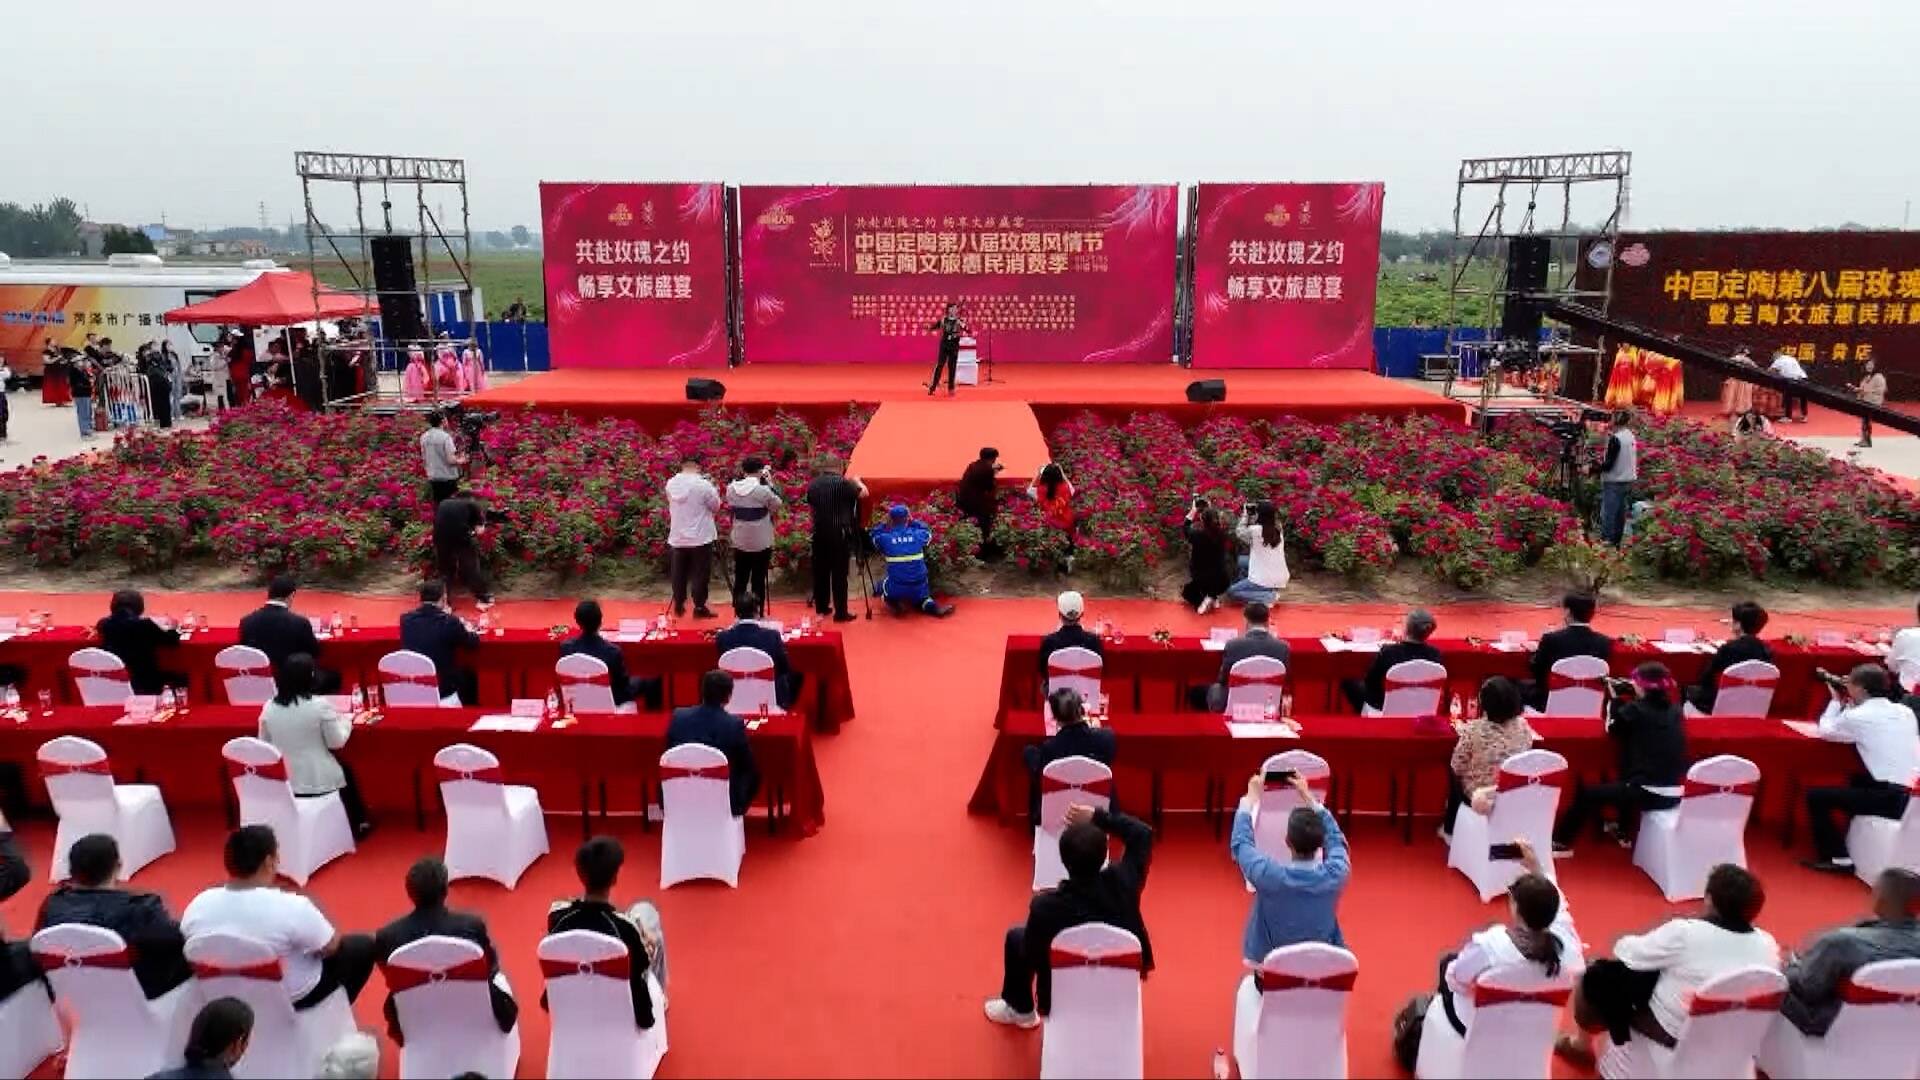 中国定陶第八届玫瑰风情节开幕 万名游客打卡游玩共赴玫瑰之约